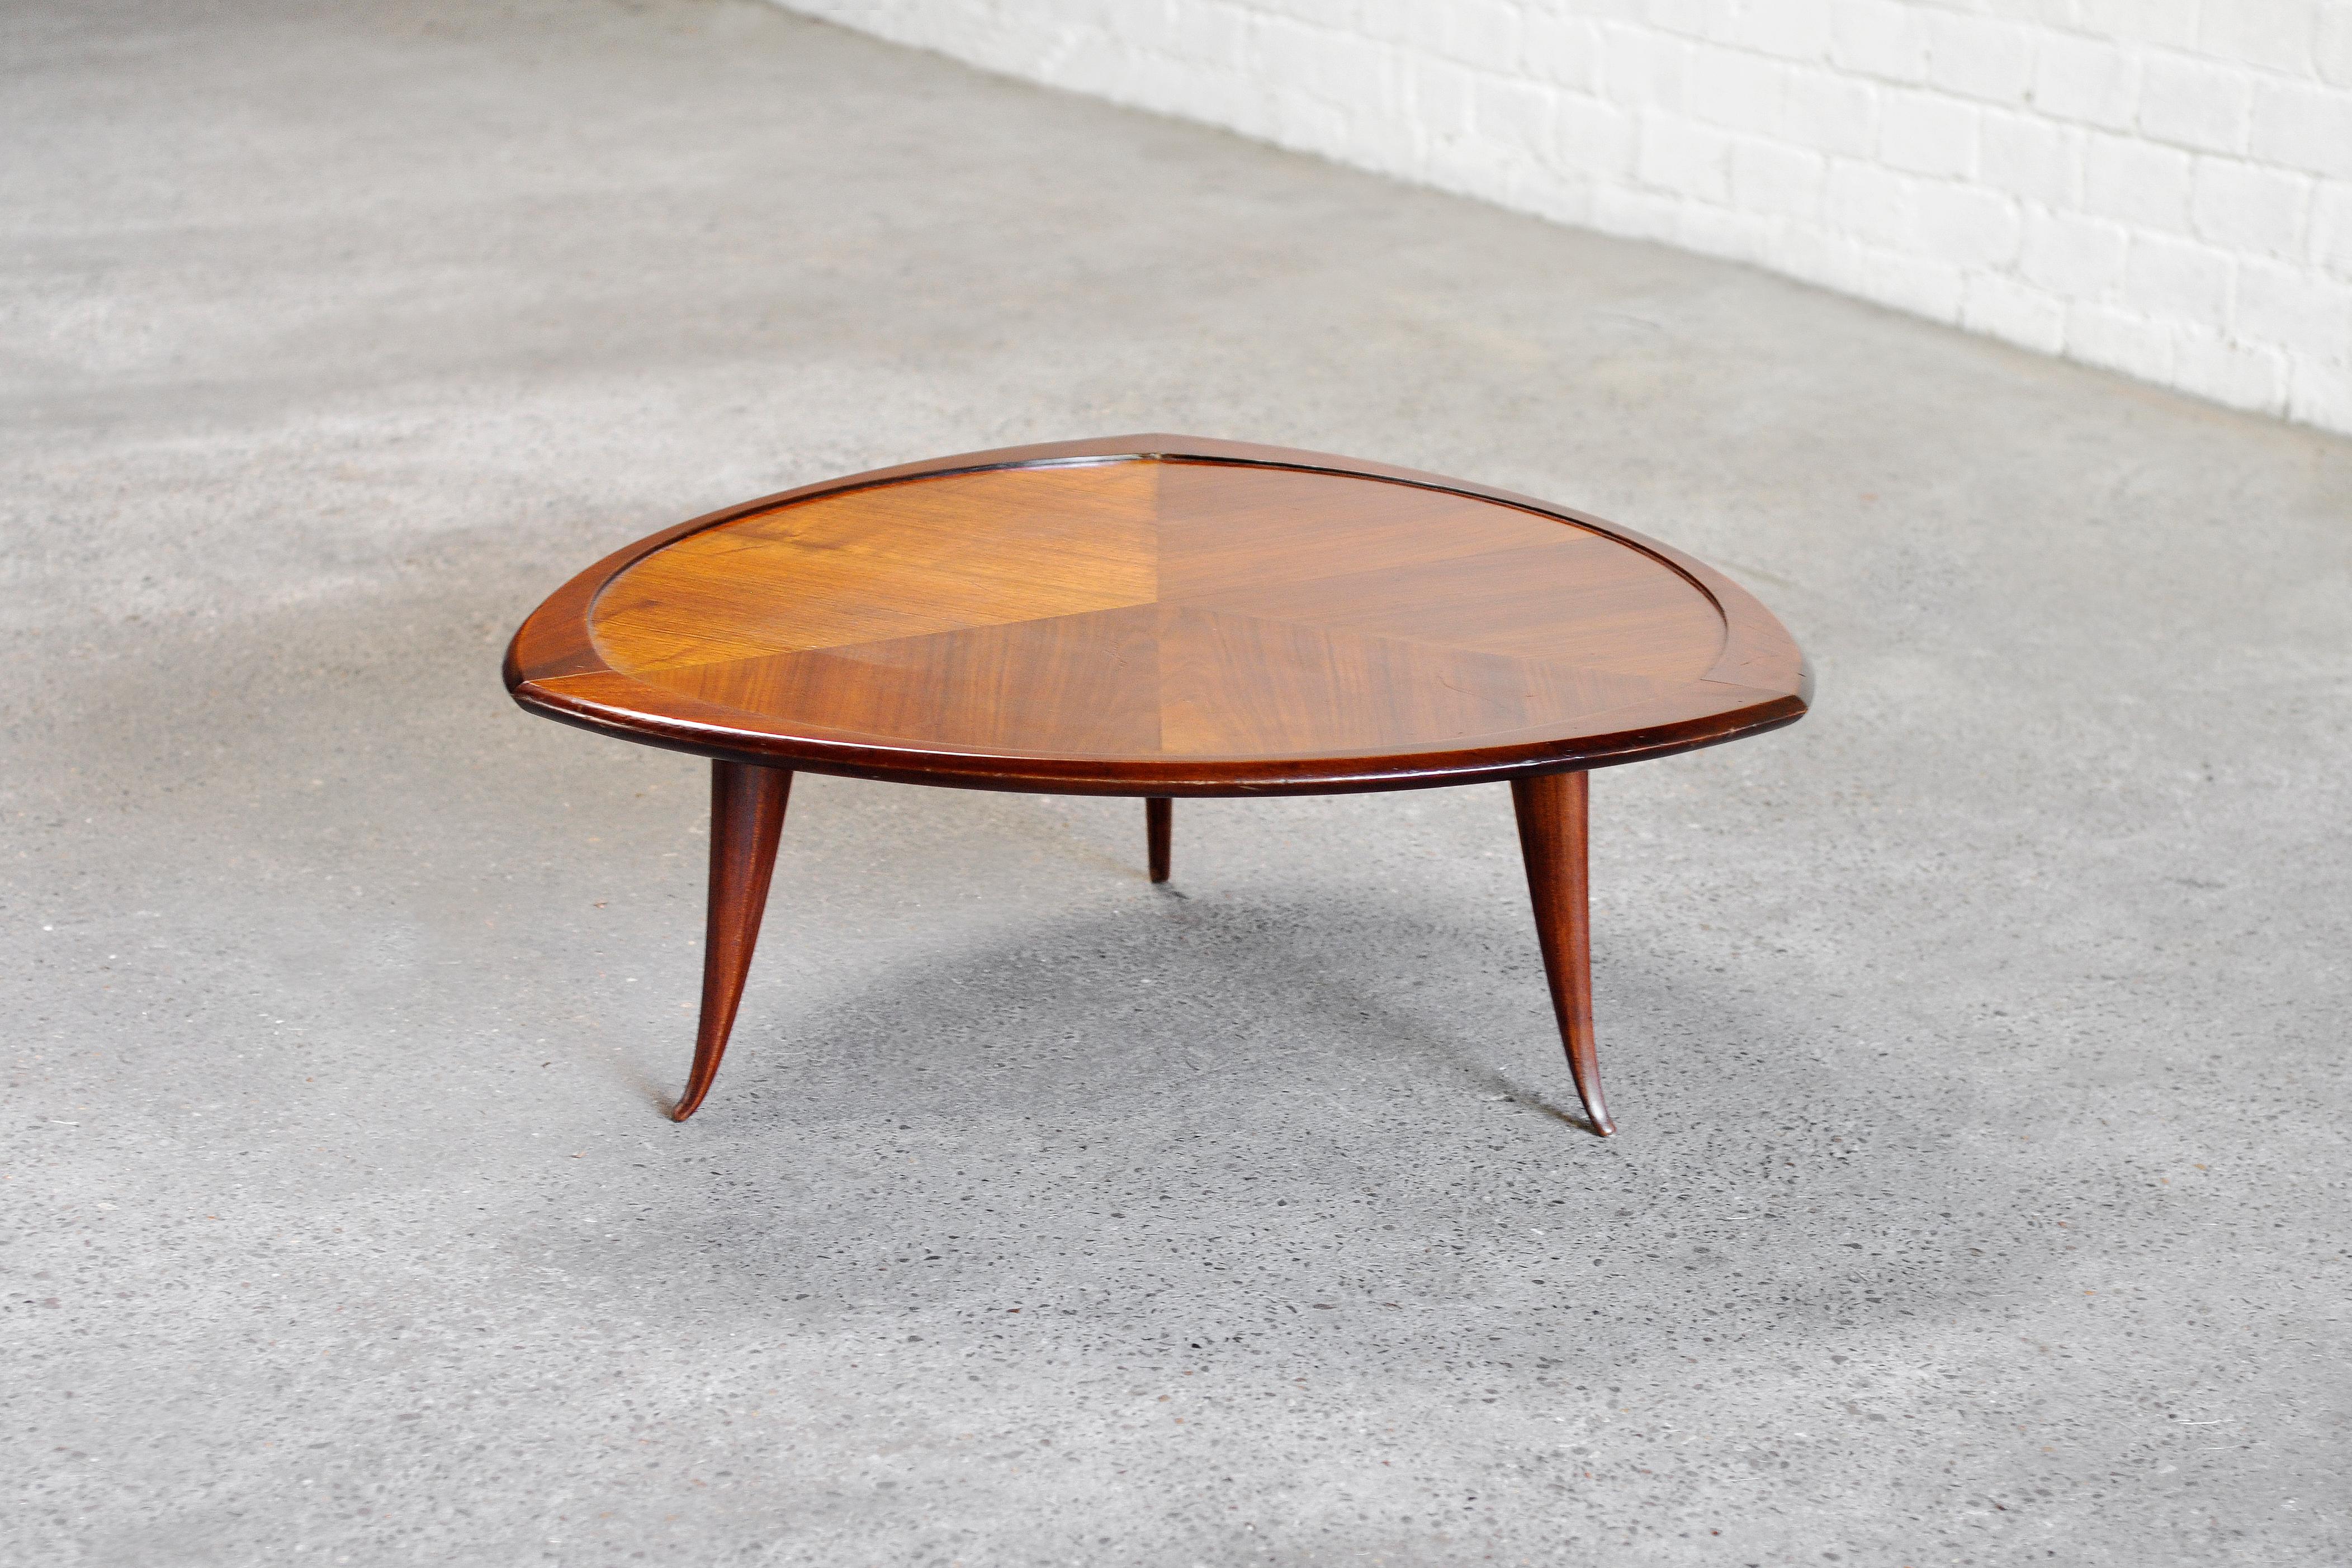 Table basse de designer italien des années 1960, fabriquée à partir d'un mélange de différentes essences de bois. Grâce à son plateau de forme particulière et unique, cette table dégage une esthétique décorative et unique. Les pieds sont sculptés en